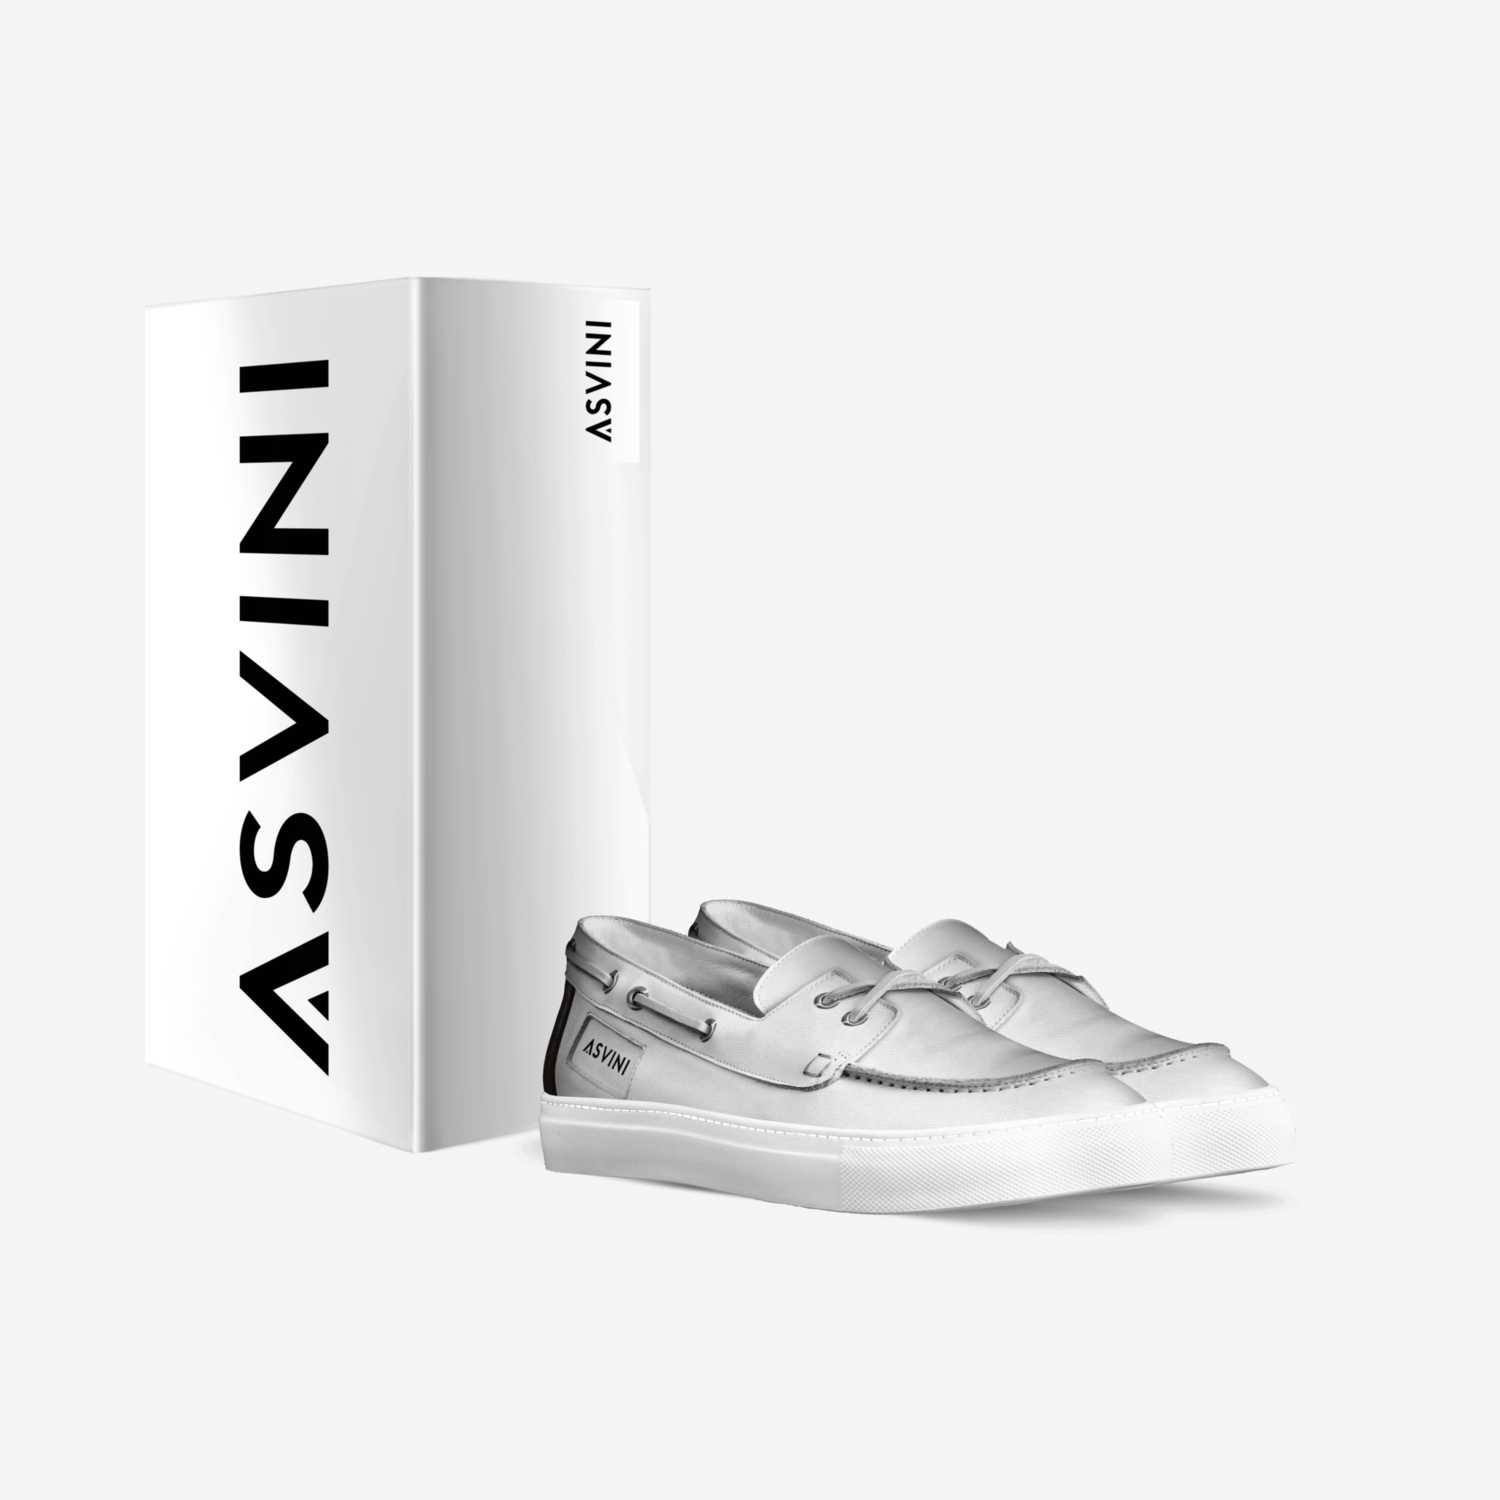 Asvini  custom made in Italy shoes by Johann Tshibangu | Box view